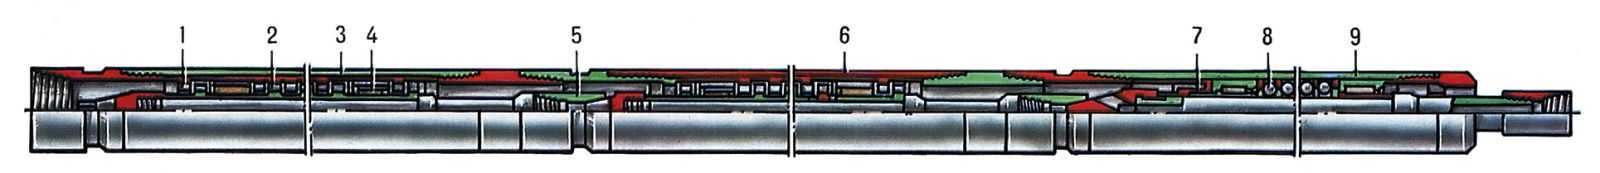  Pис. 1. Cекционный шпиндельный турбобур: 1 - статор турбины; 2 - ротор турбины; 3 - верхняя секция; 4 - радиальный резинометаллический подшипник; 5 - конусошлицевая муфта; 6 - нижняя секция; 7 - <a href=